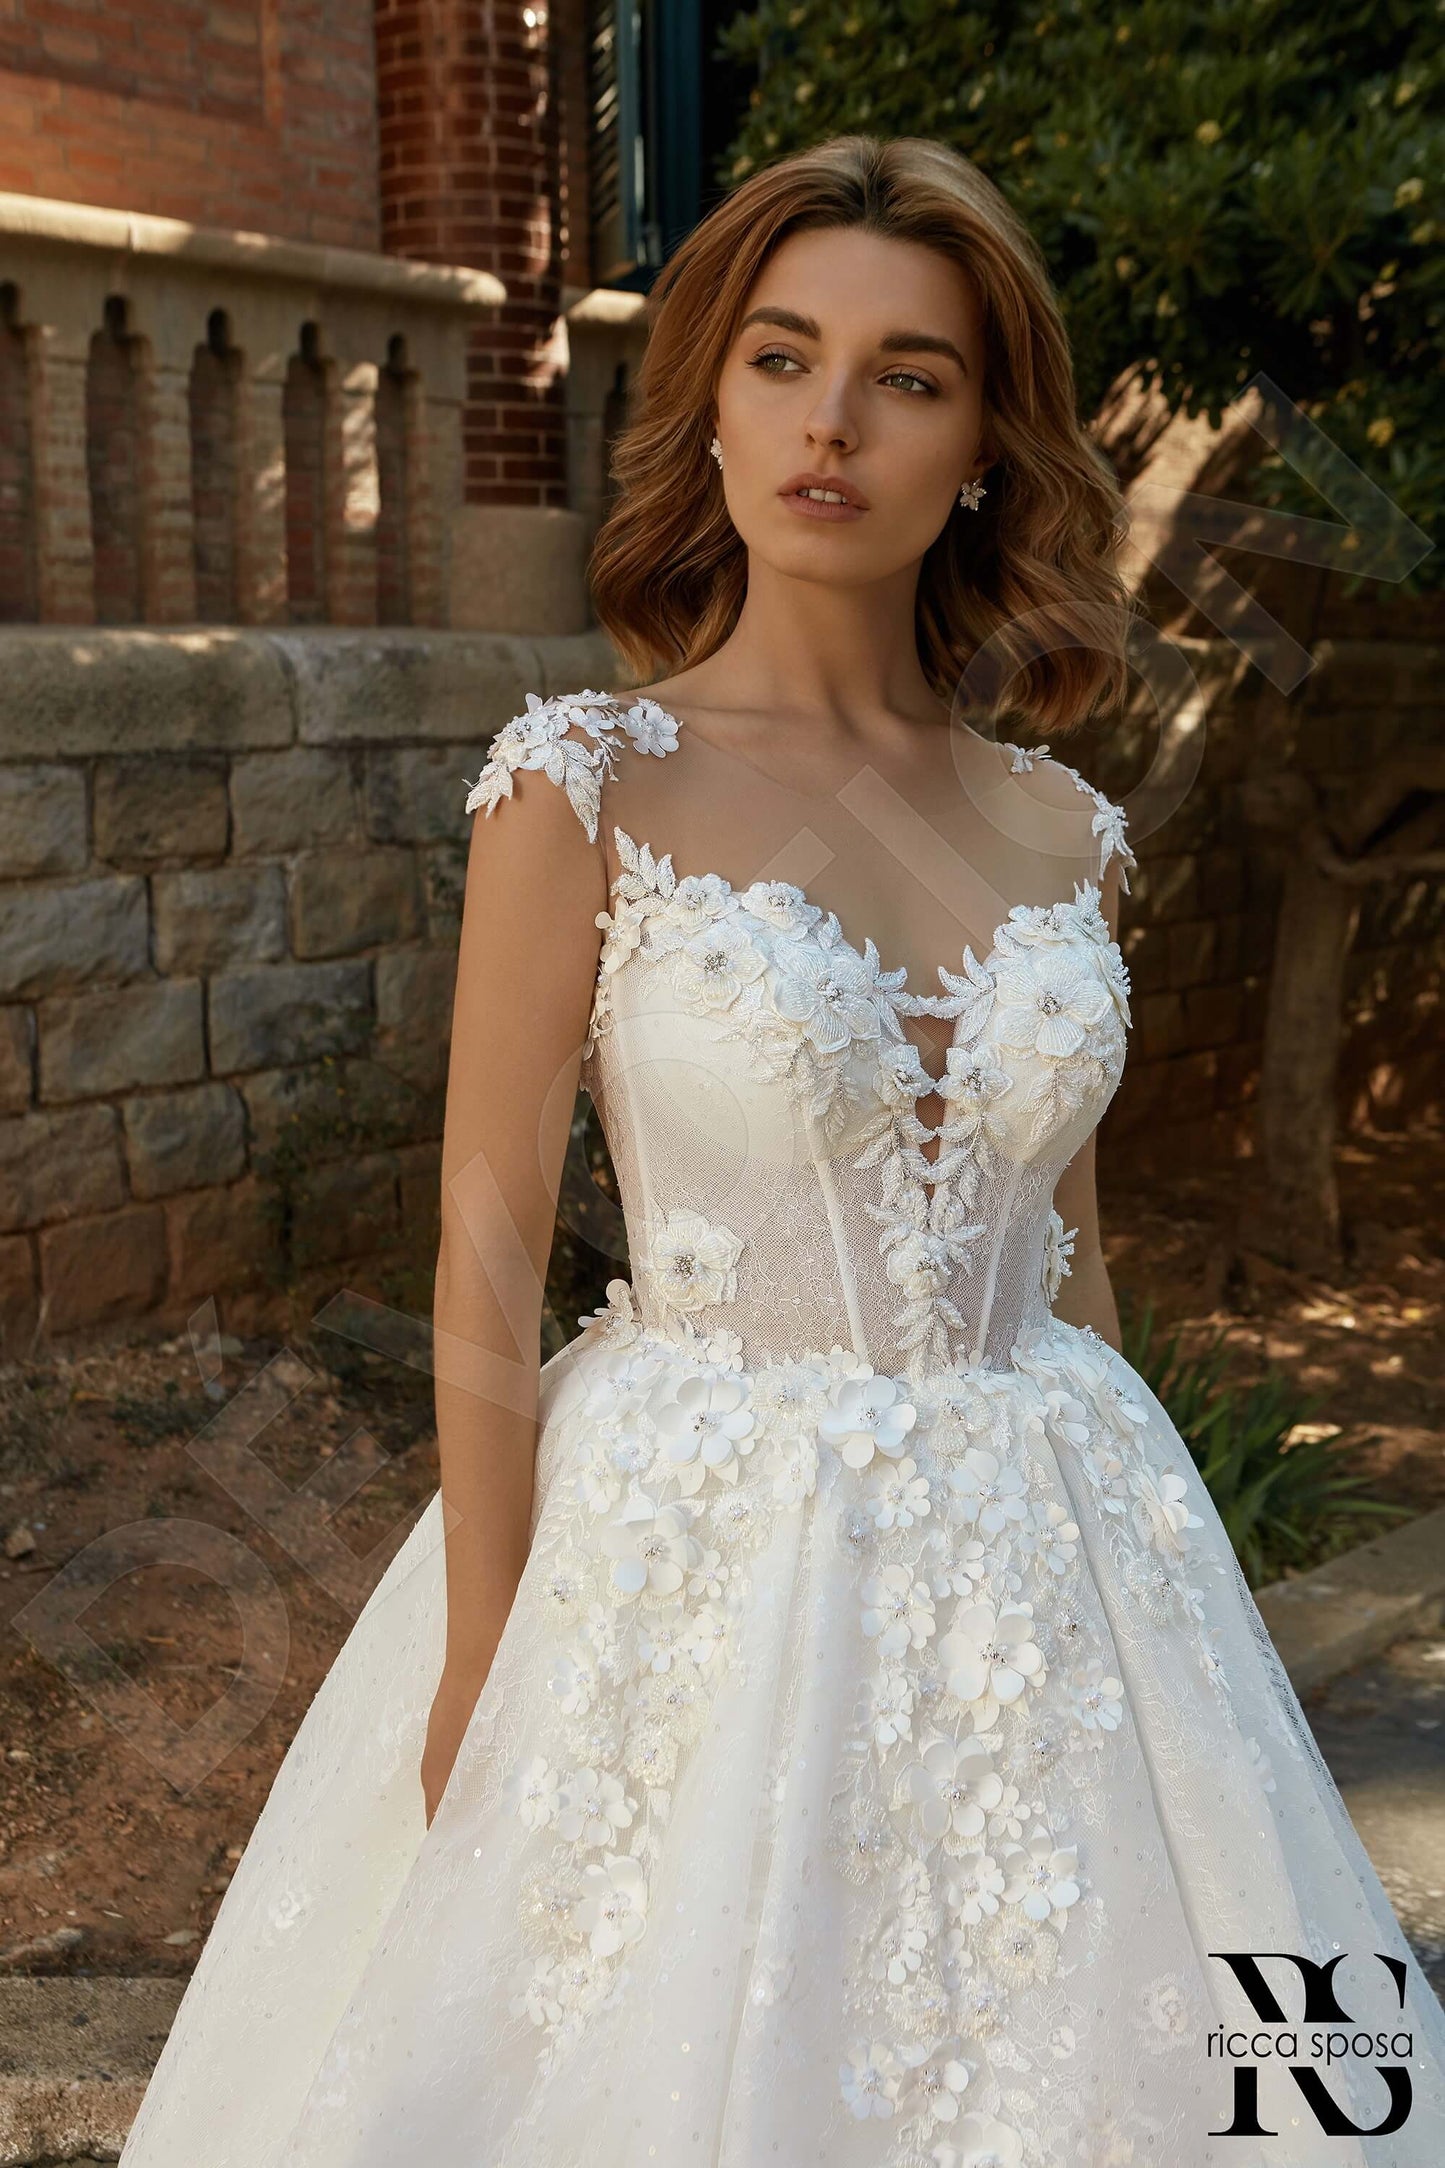 Martina Open back Princess/Ball Gown Sleeveless Wedding Dress 2